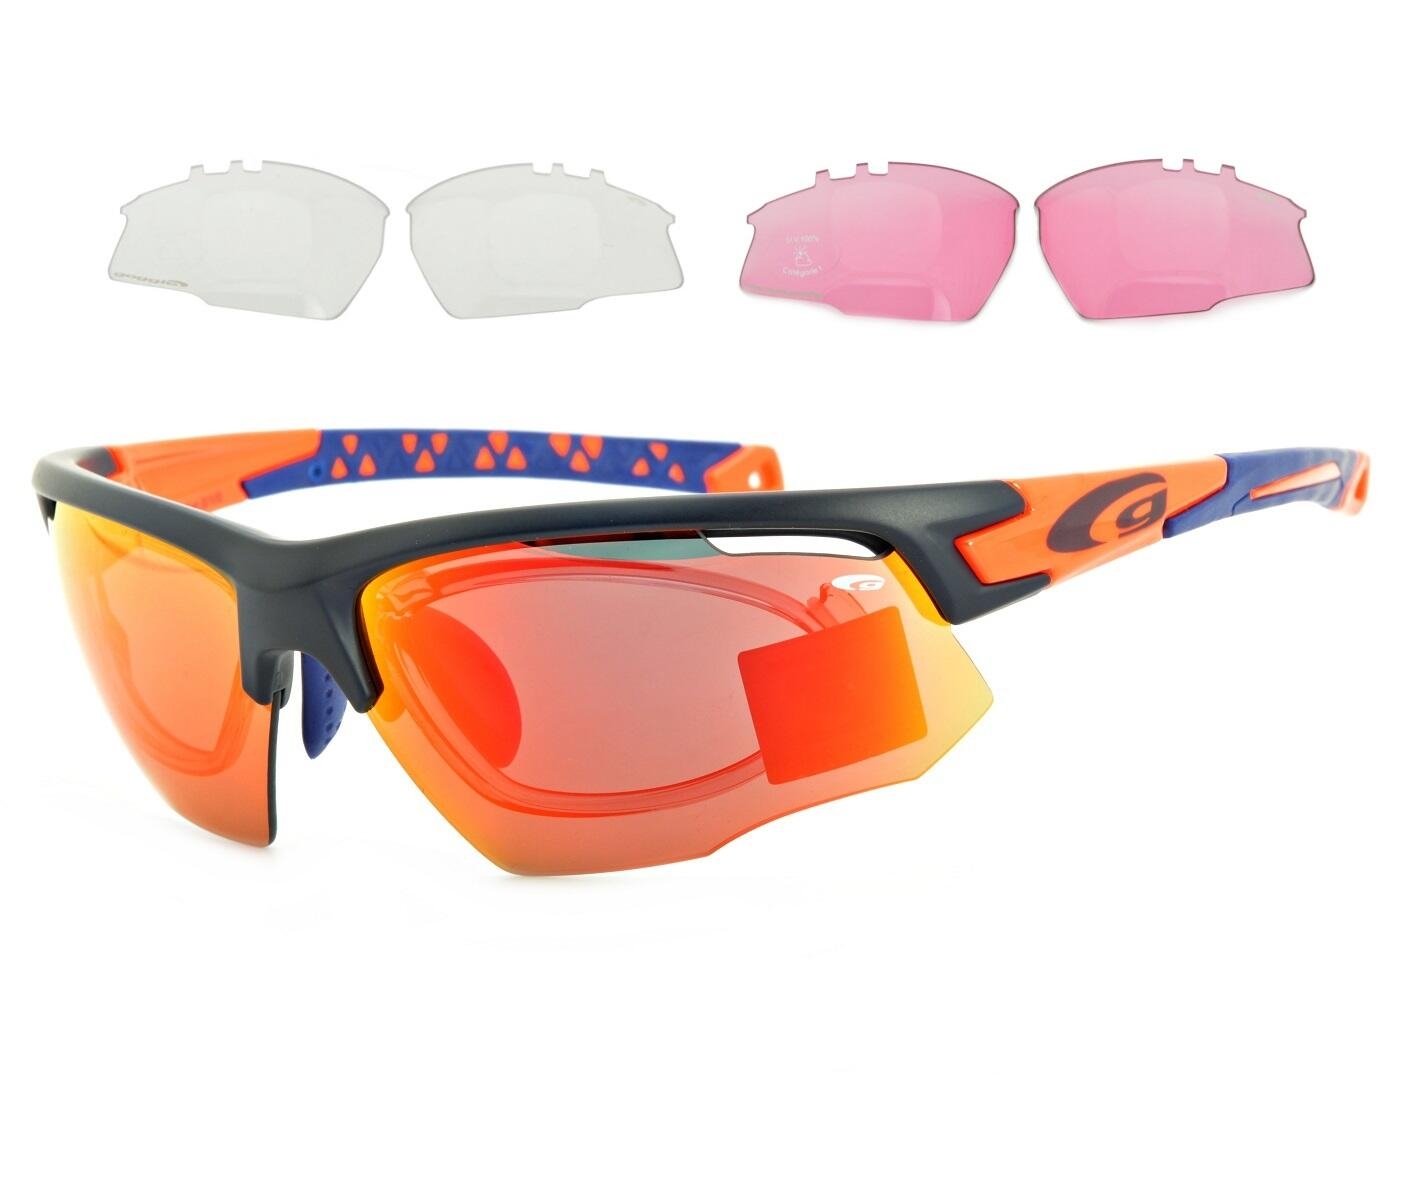 Przeciwsłoneczne okulary sportowe korekcyjne 3 komplety soczewek GOGGLE E636-4R